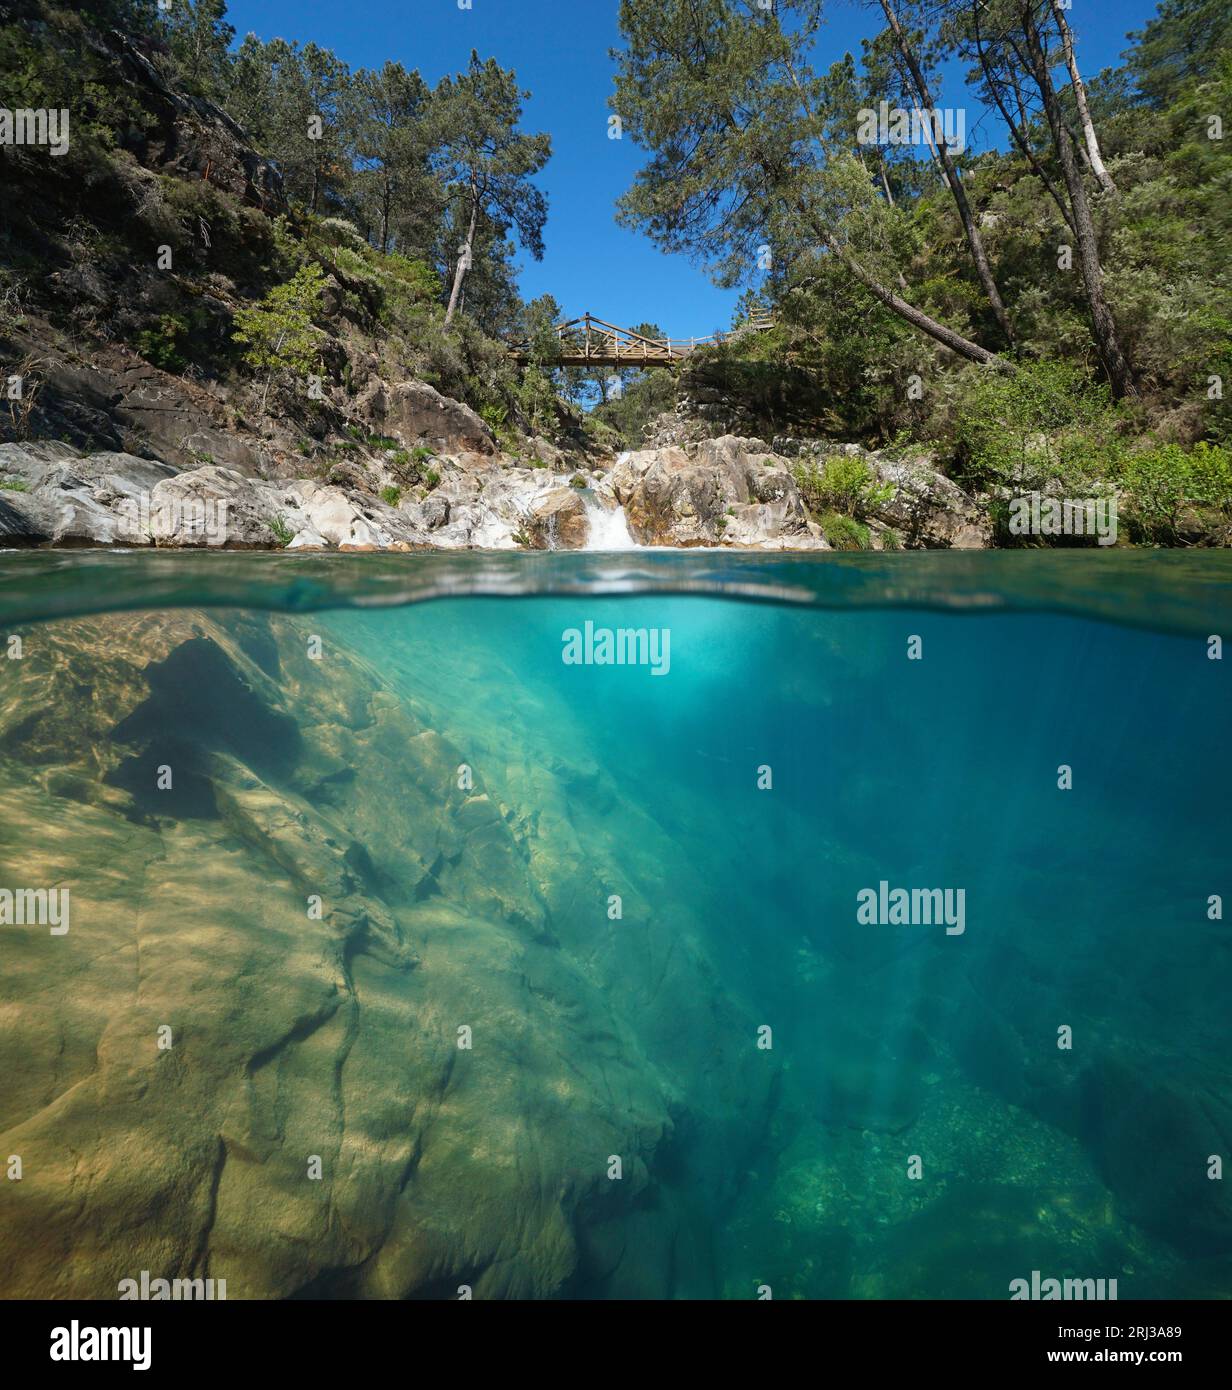 Naturbad in einem Fluss mit klarem Wasser, geteilter Blick über und unter Wasser, Naturschauplatz, Spanien, Galicien, Provinz Pontevedra, Pozo del Arco Stockfoto